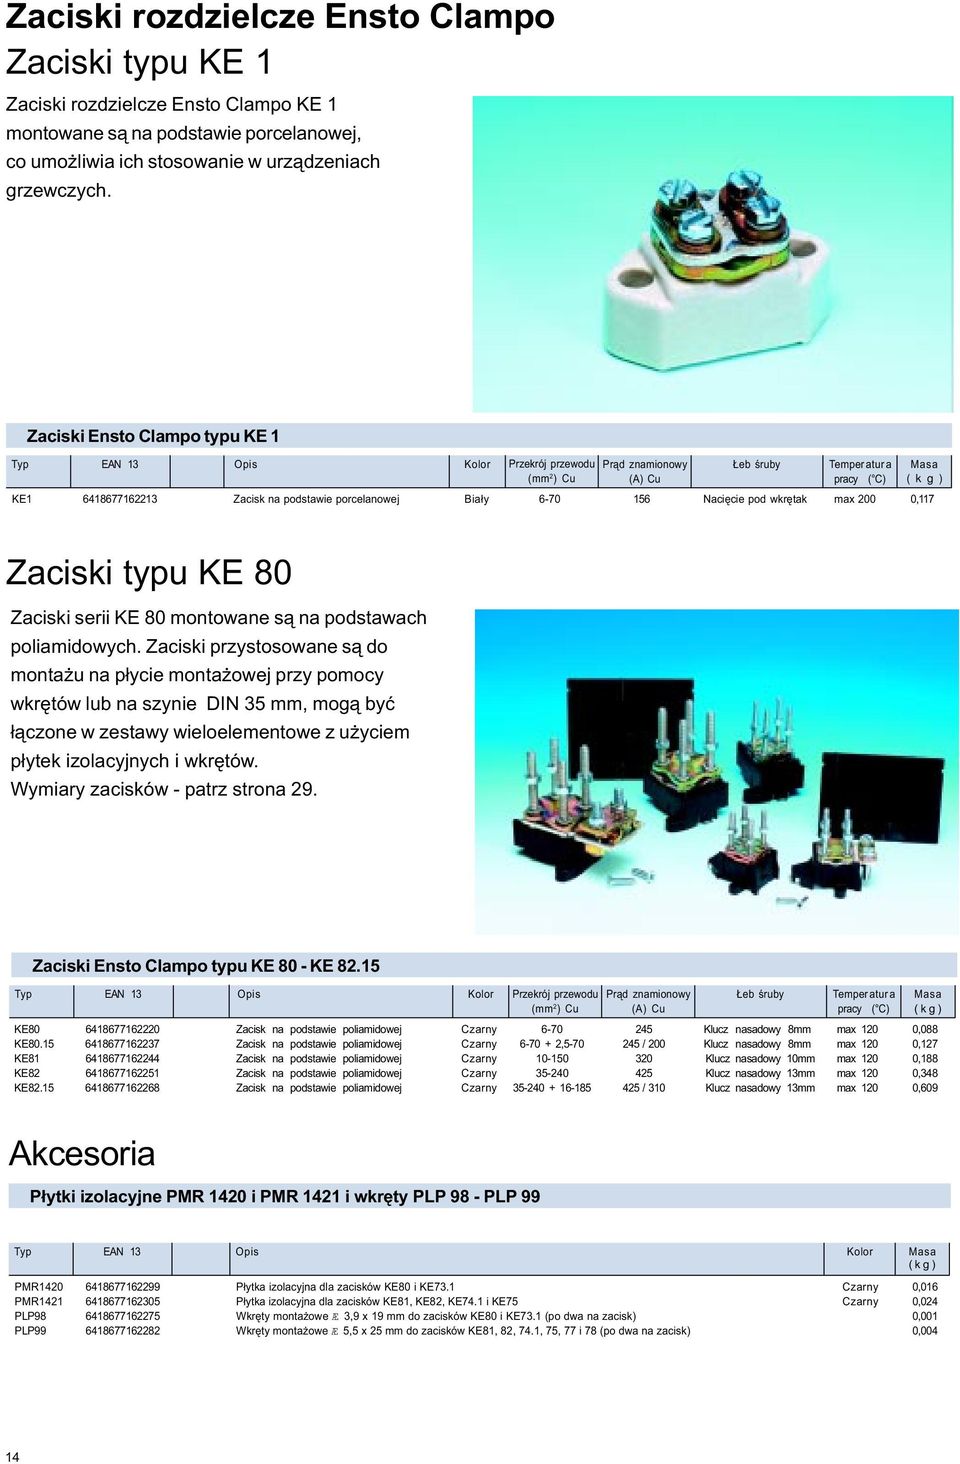 pod wkrêtak max 200 0,117 Zaciski typu KE 80 Zaciski serii KE 80 montowane s¹ na podstawach poliamidowych.